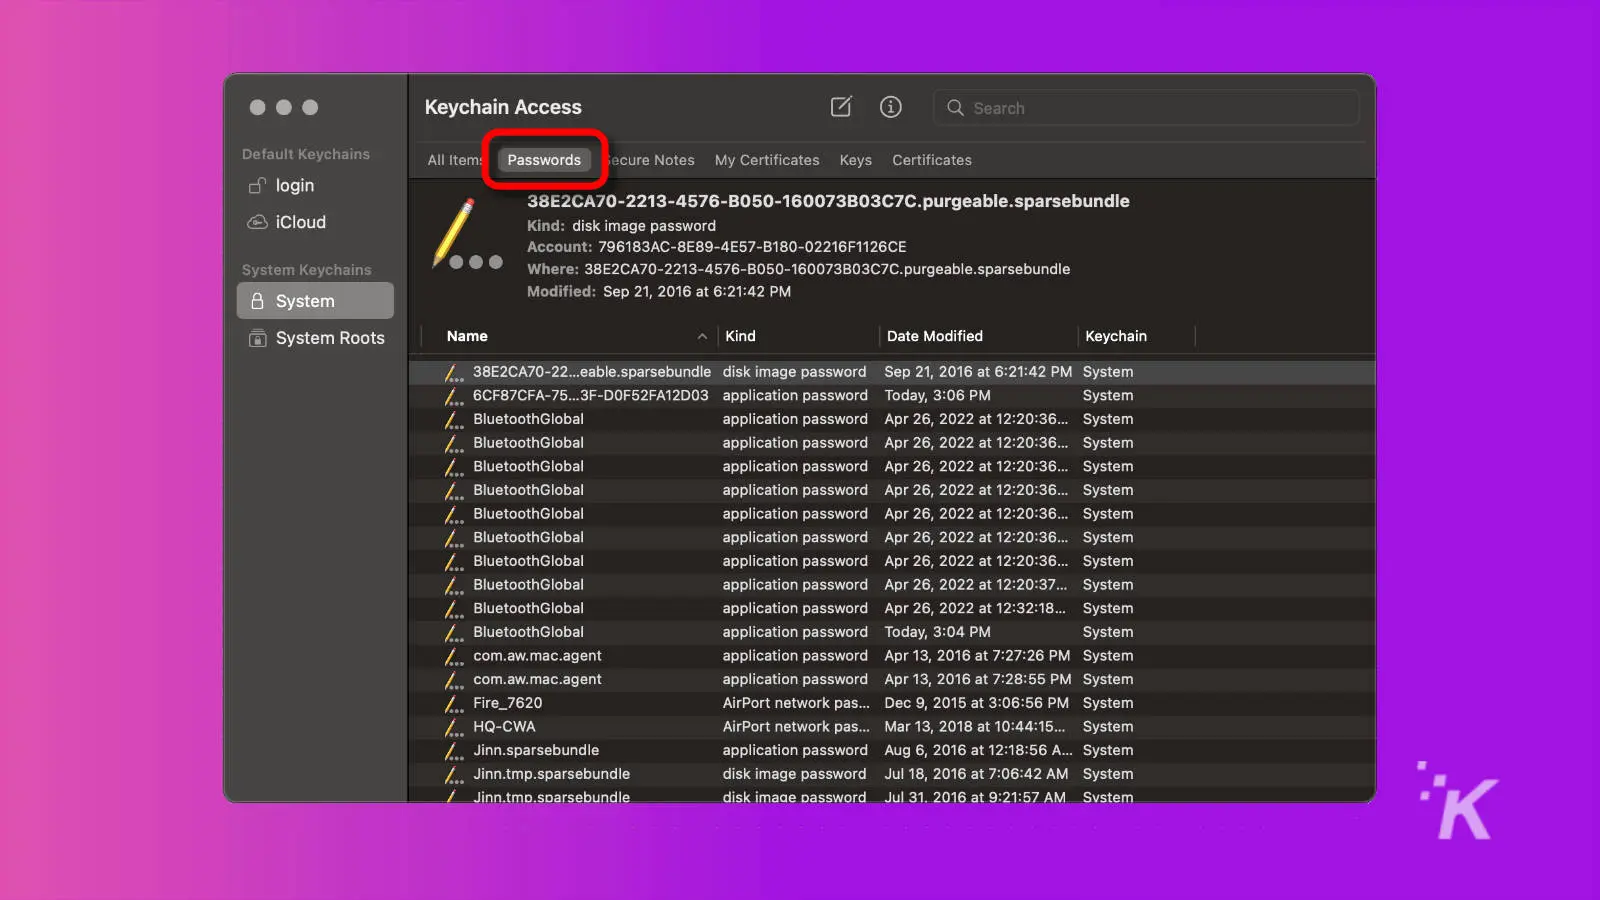 captura de pantalla de la aplicación de acceso al llavero macos con la pestaña de contraseñas resaltada